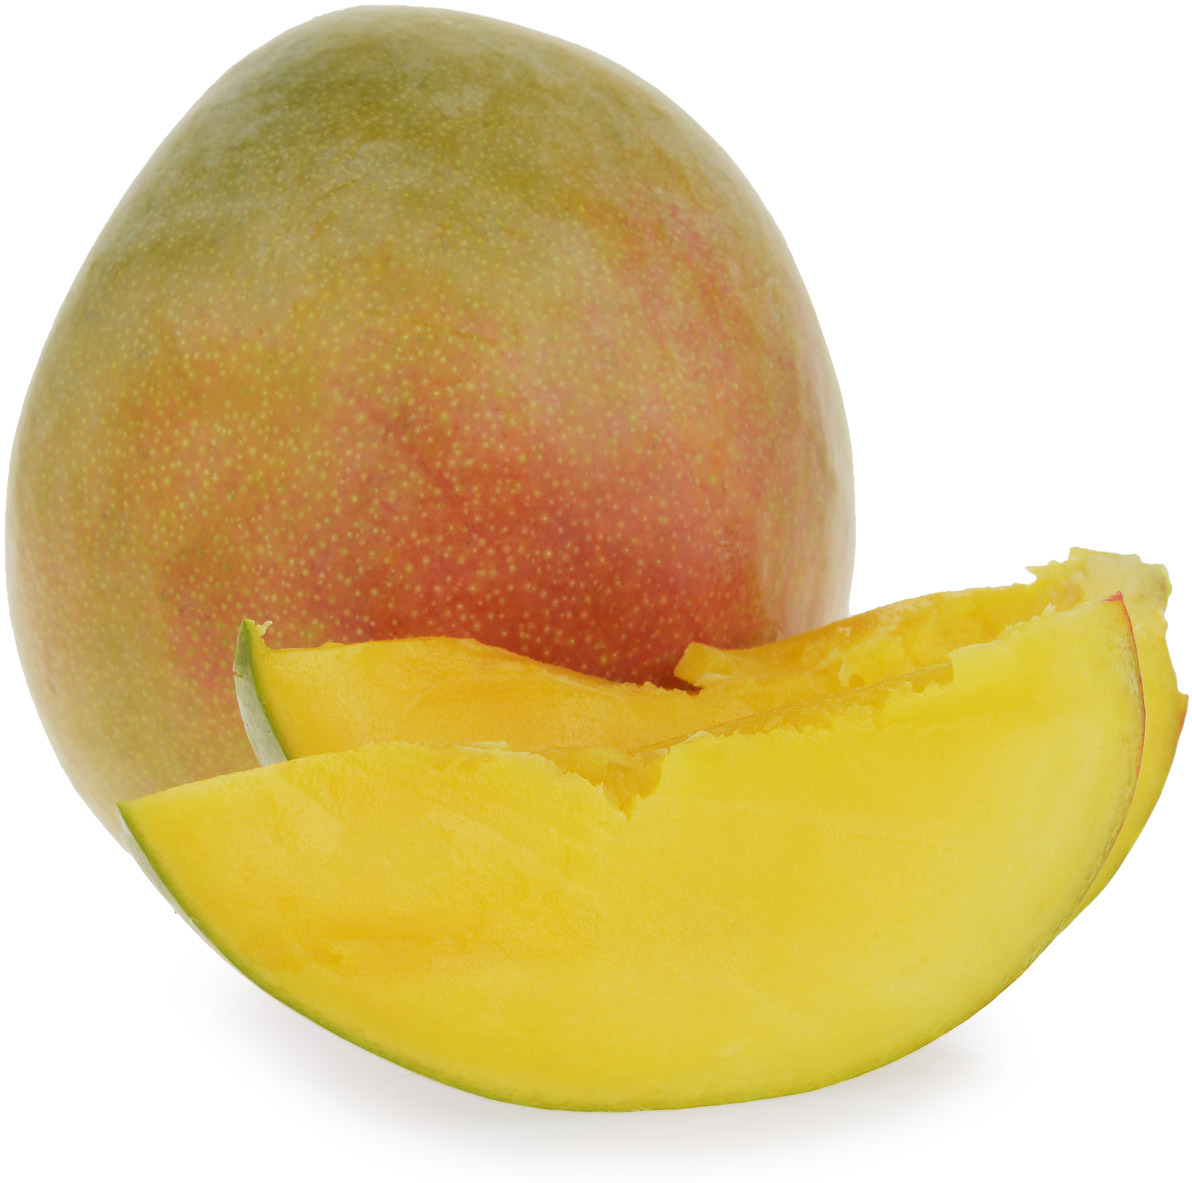 Как выглядит спелый манго снаружи и внутри фото